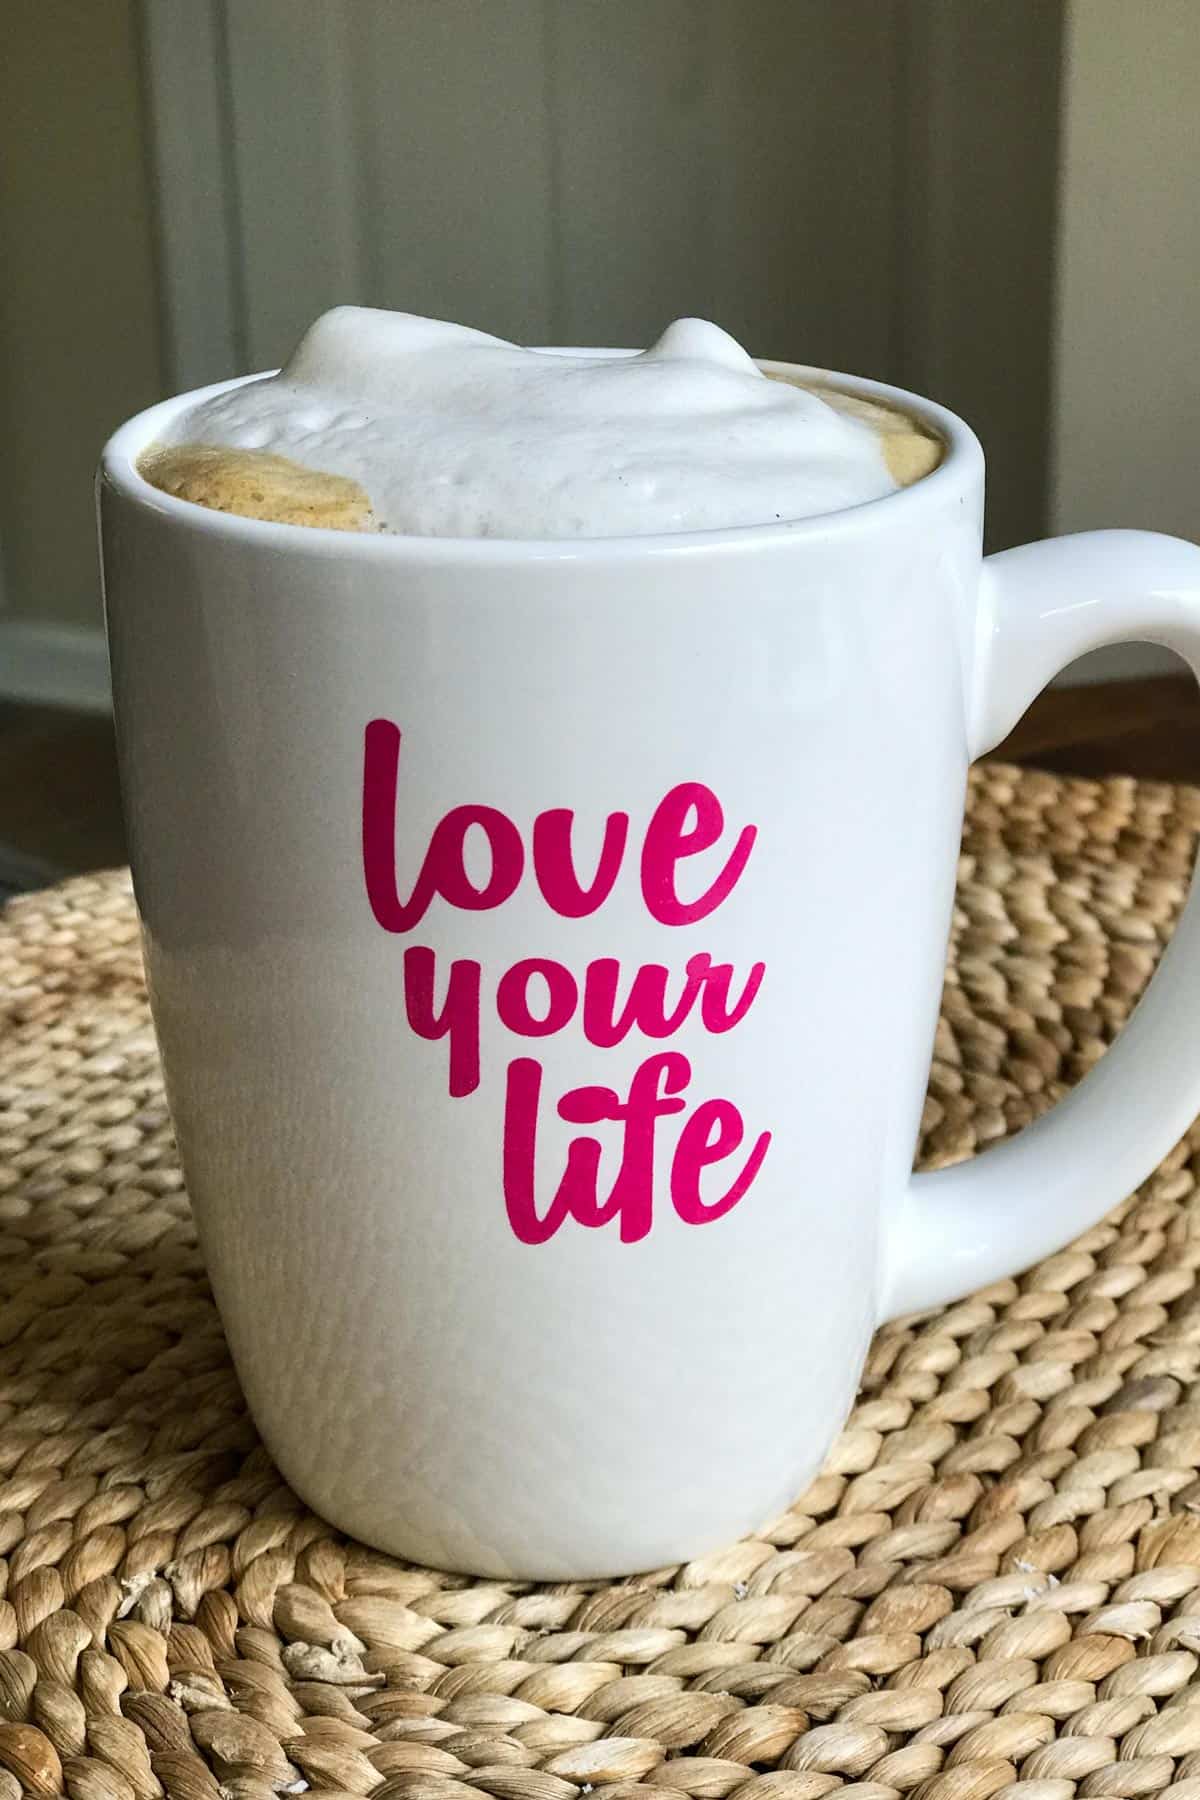 Bezmleczne cappuccino w kubku z napisem "kochaj swoje życie"